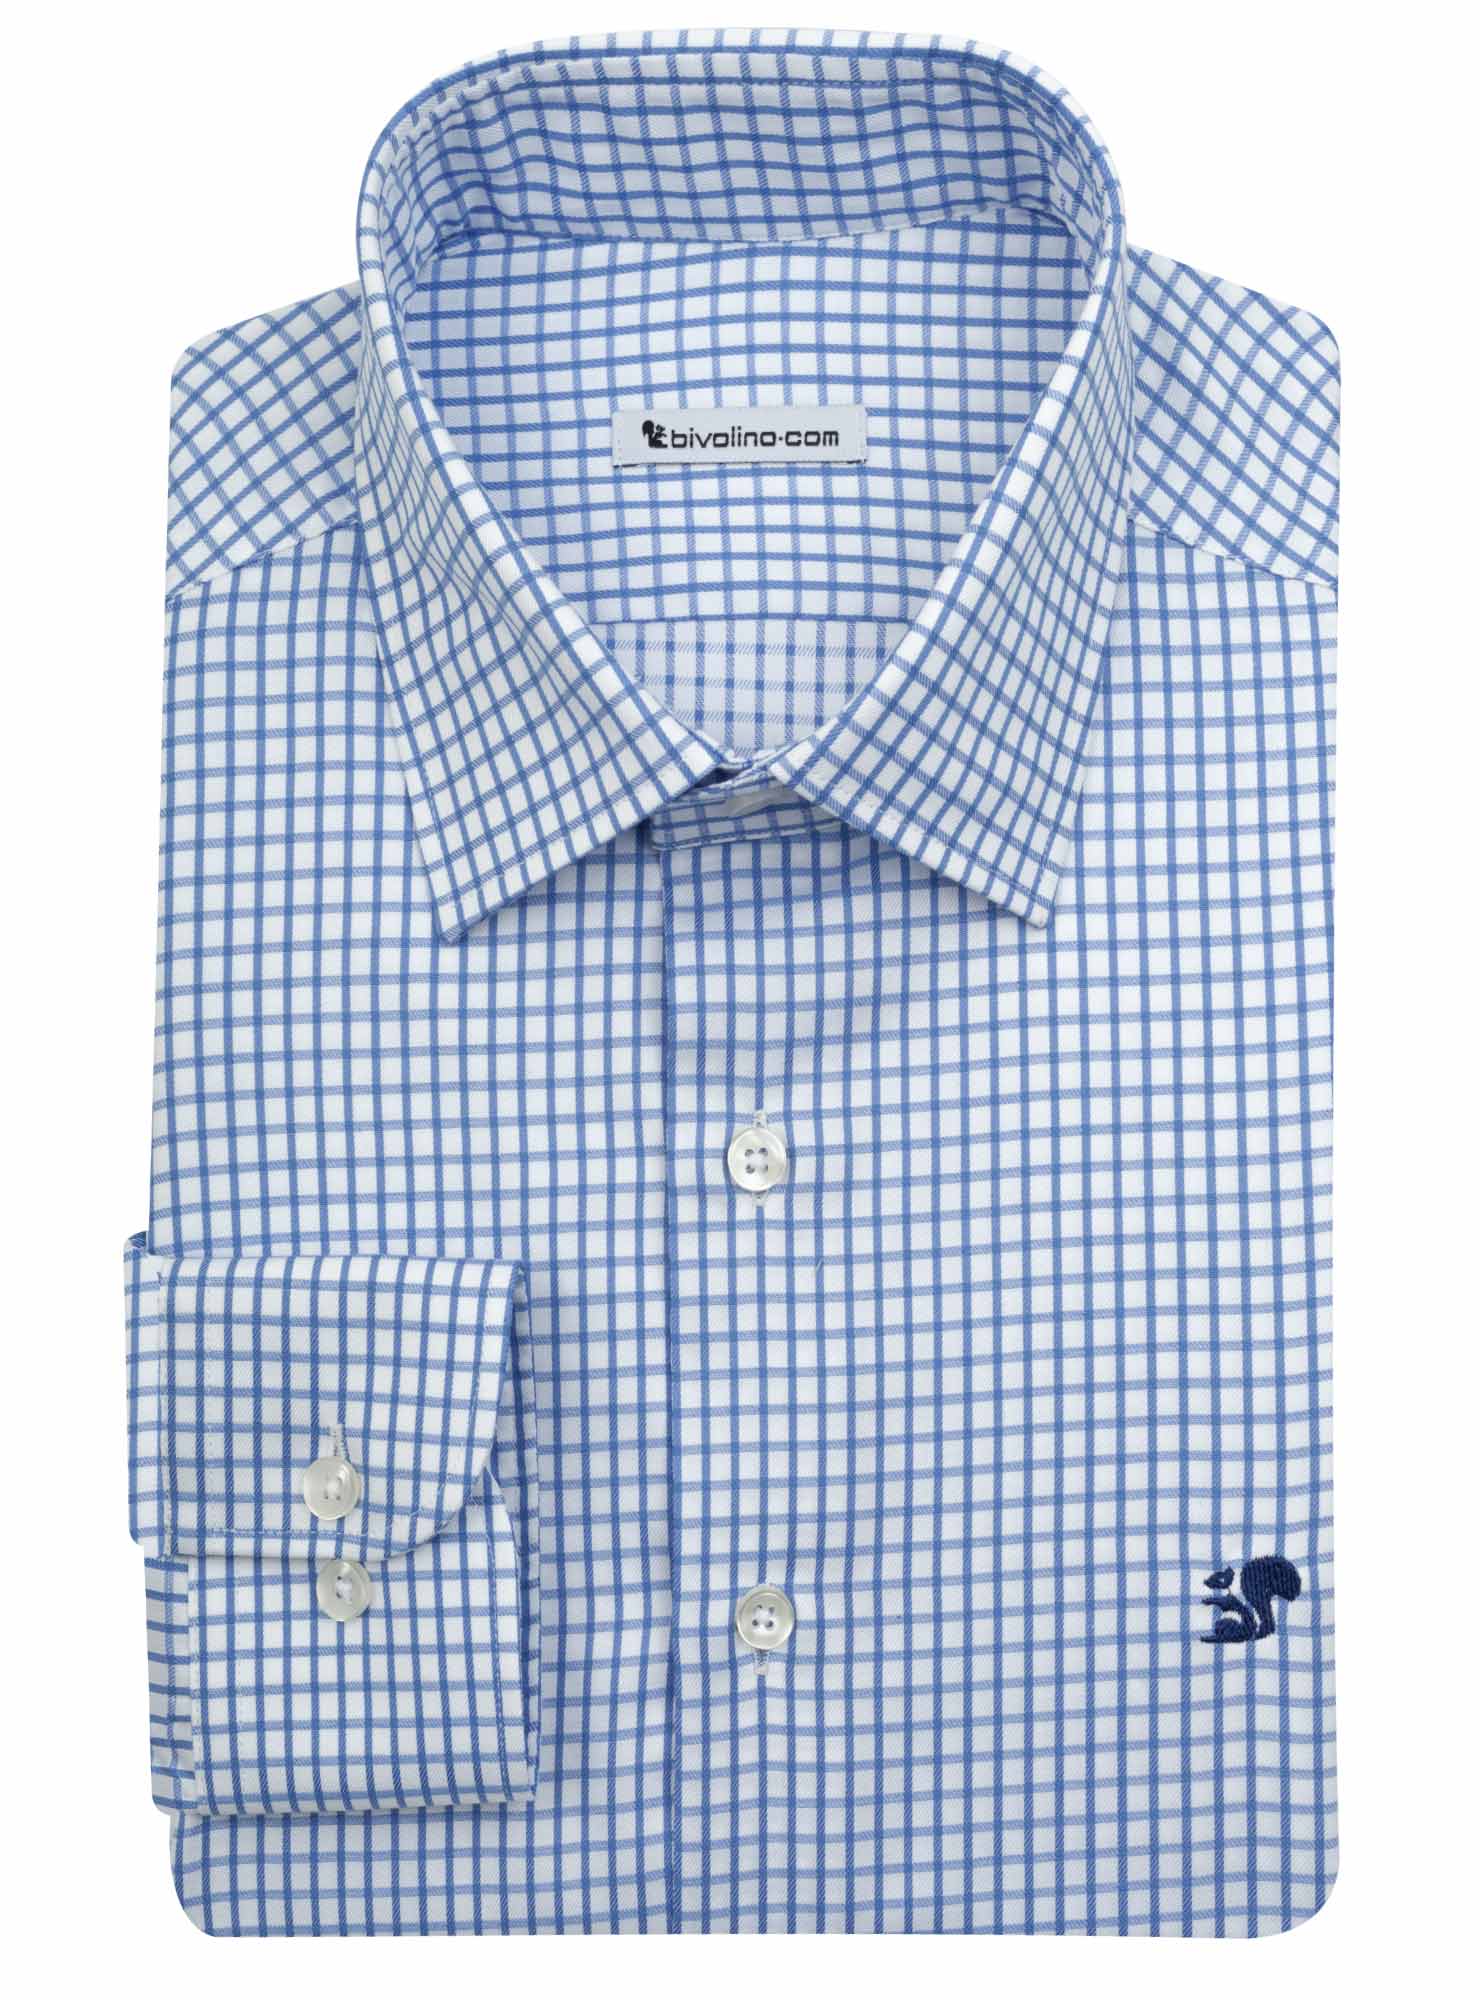 SASSARI - Sarga de algodón azul marino con cuadros business camisa de hombre - SAND 2